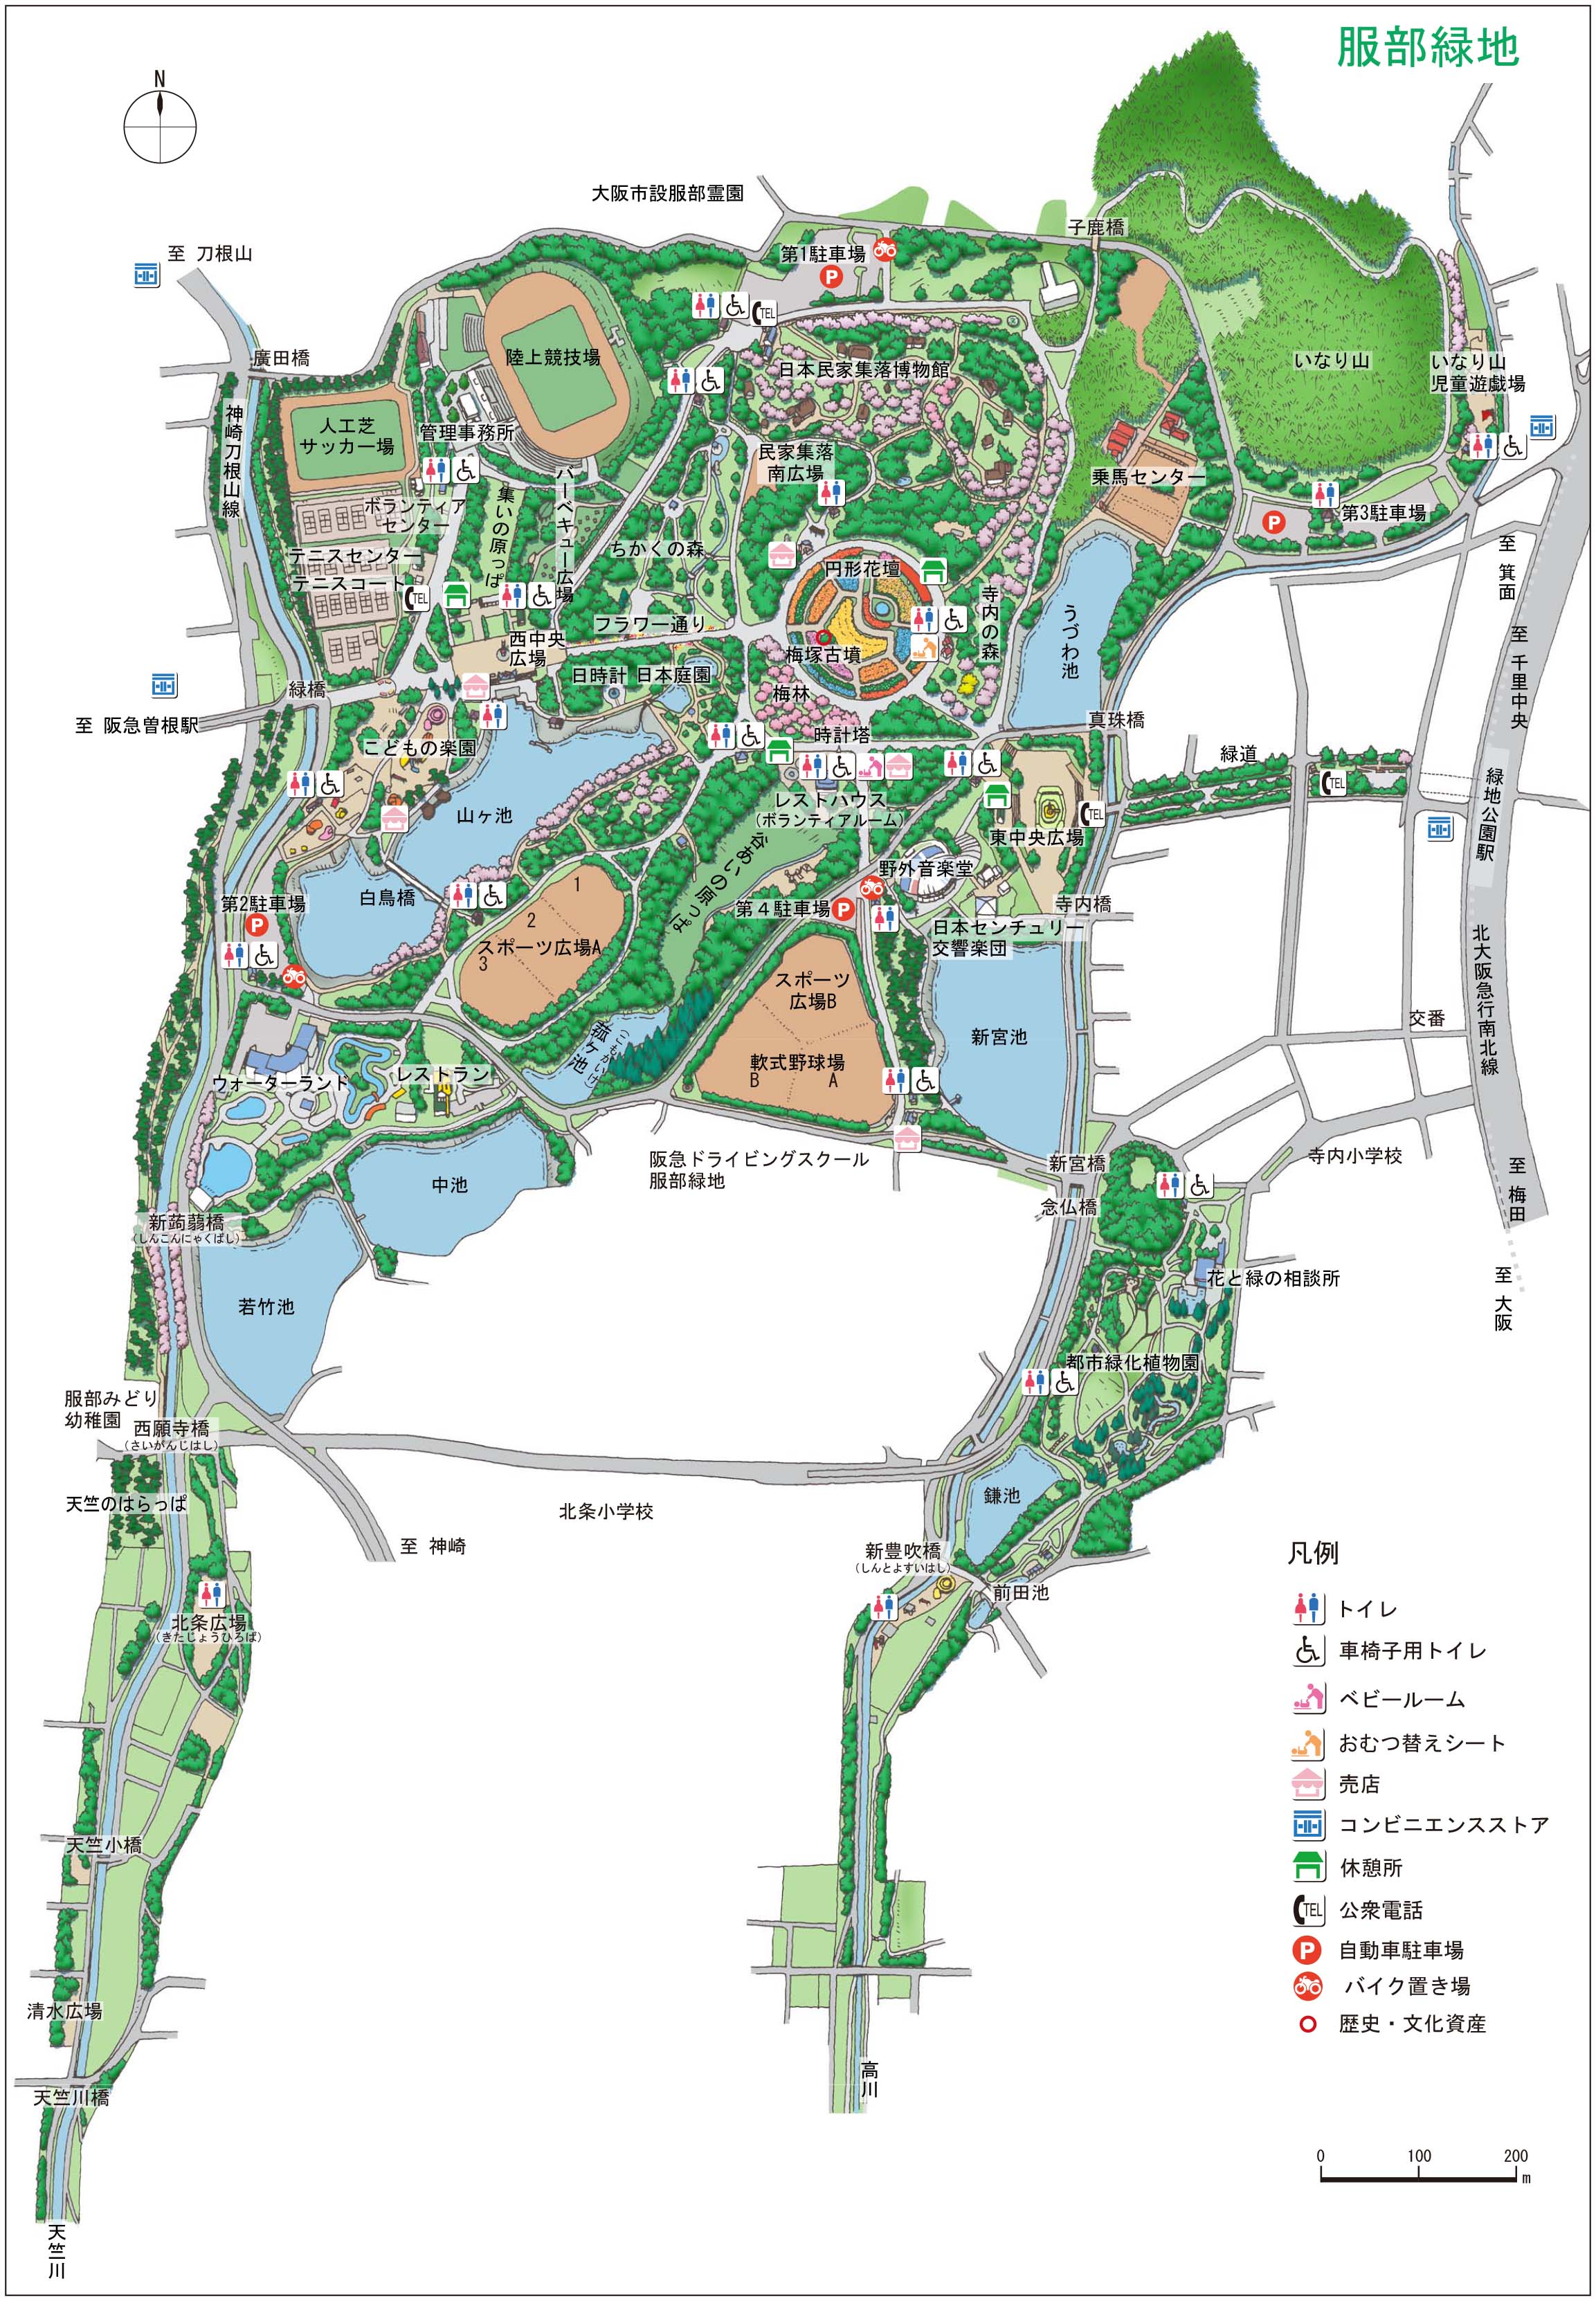 服部緑地公園バーベキューエリアパーフェクトガイド 21年最新版 大阪のレンタルバーベキューならbbqなう